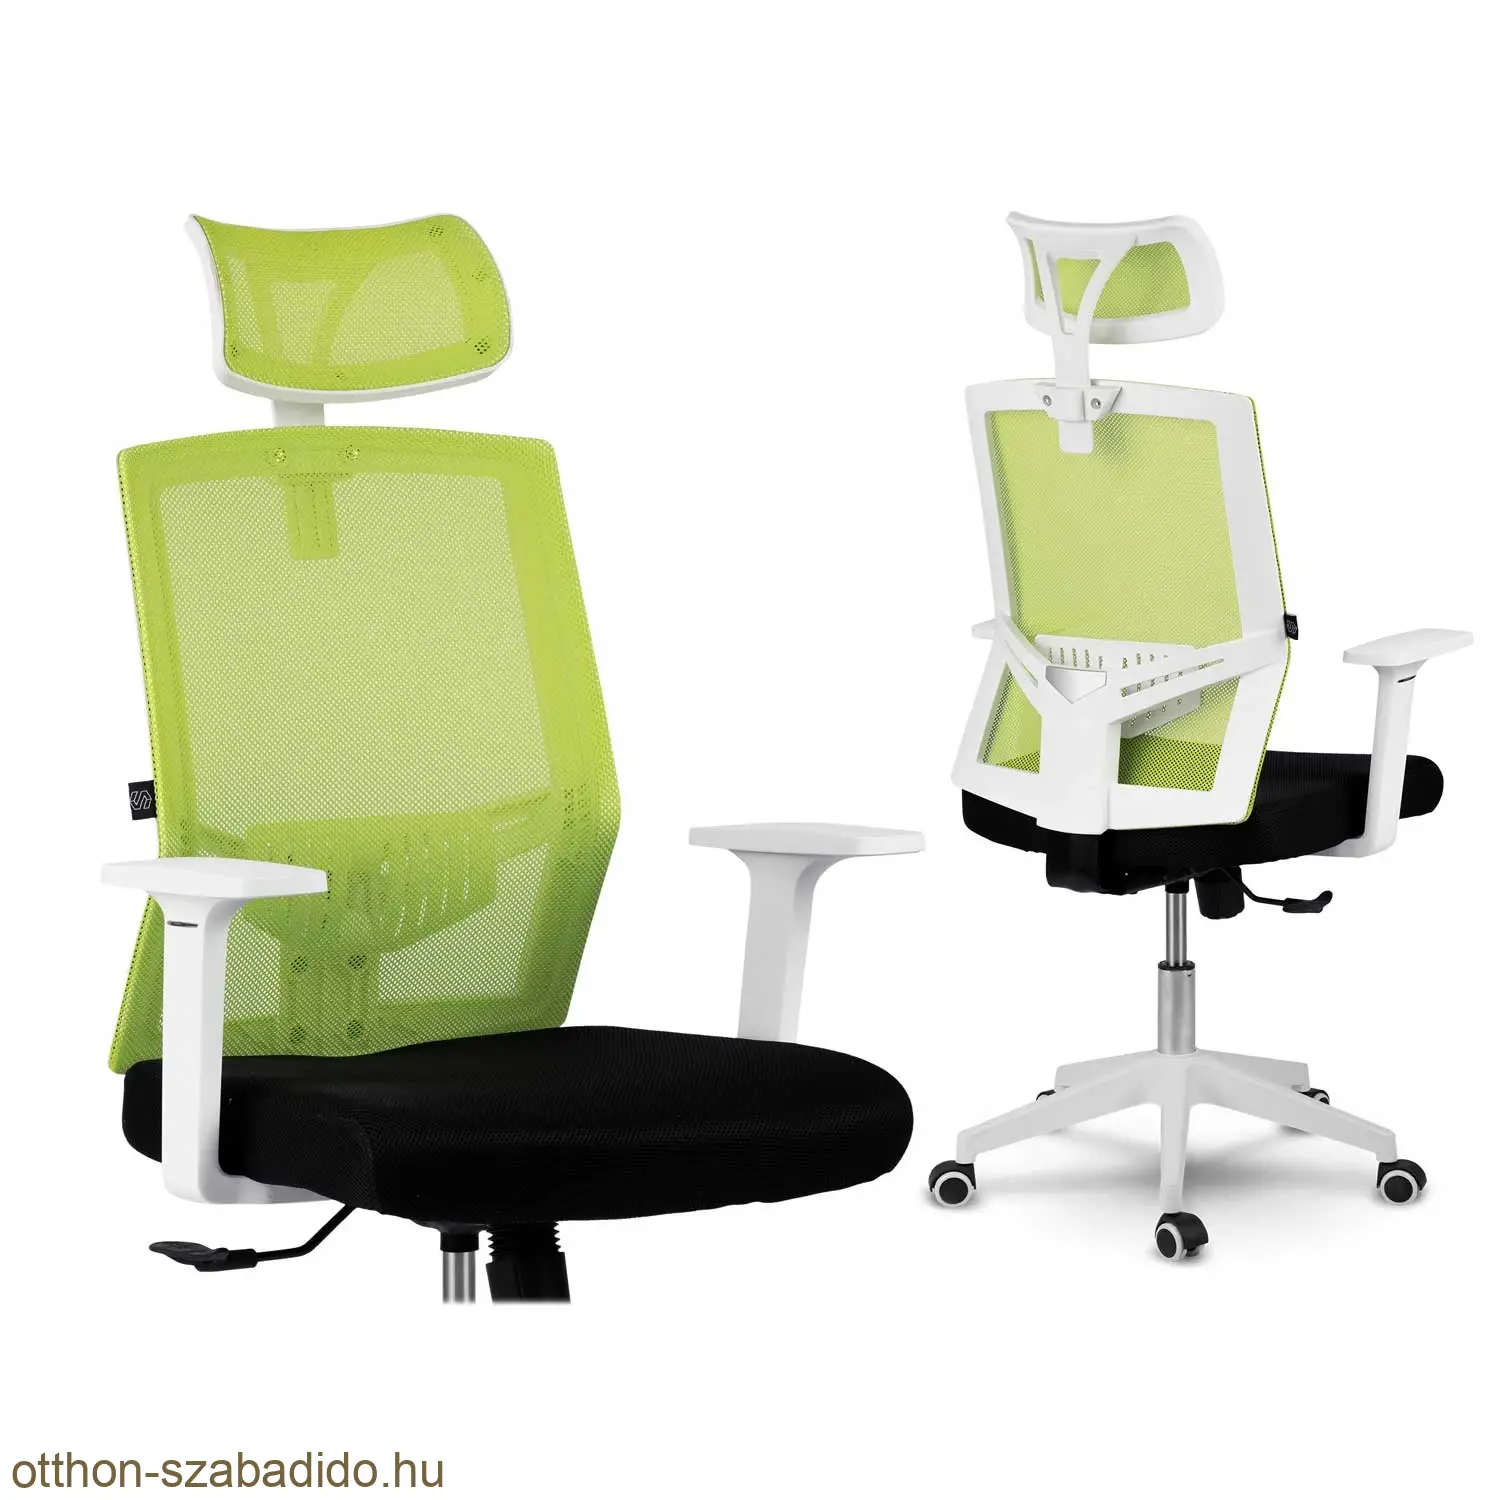 SOFOTEL mikrohálós irodai szék Rotar zöld